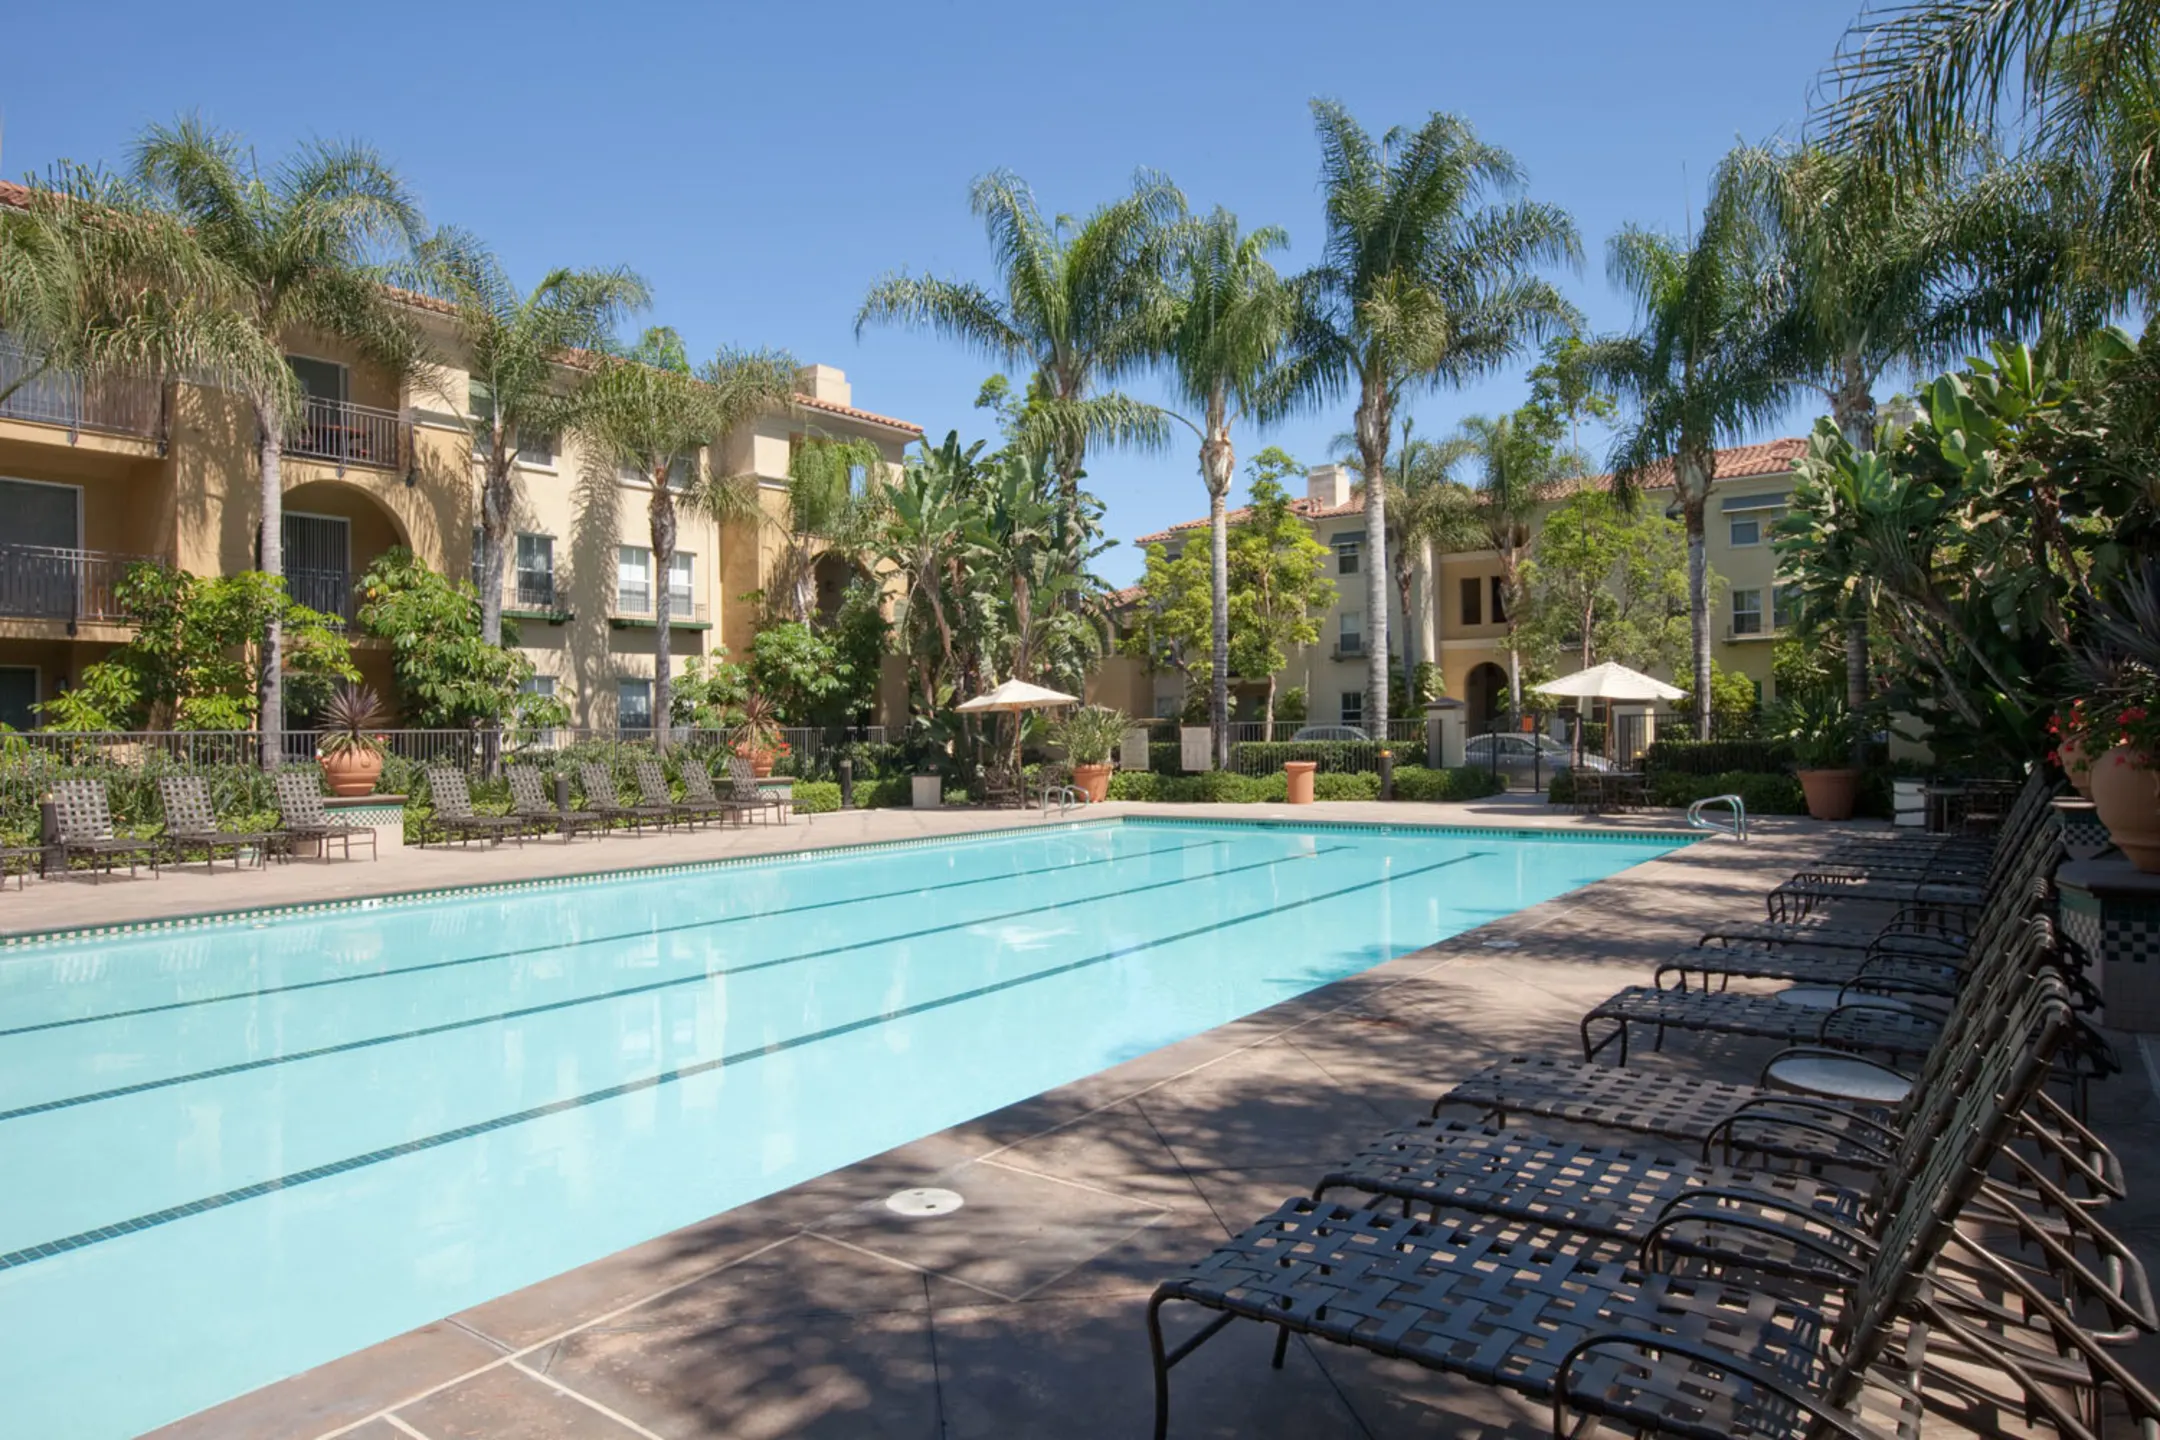 Pool - Villa Coronado - Irvine, CA